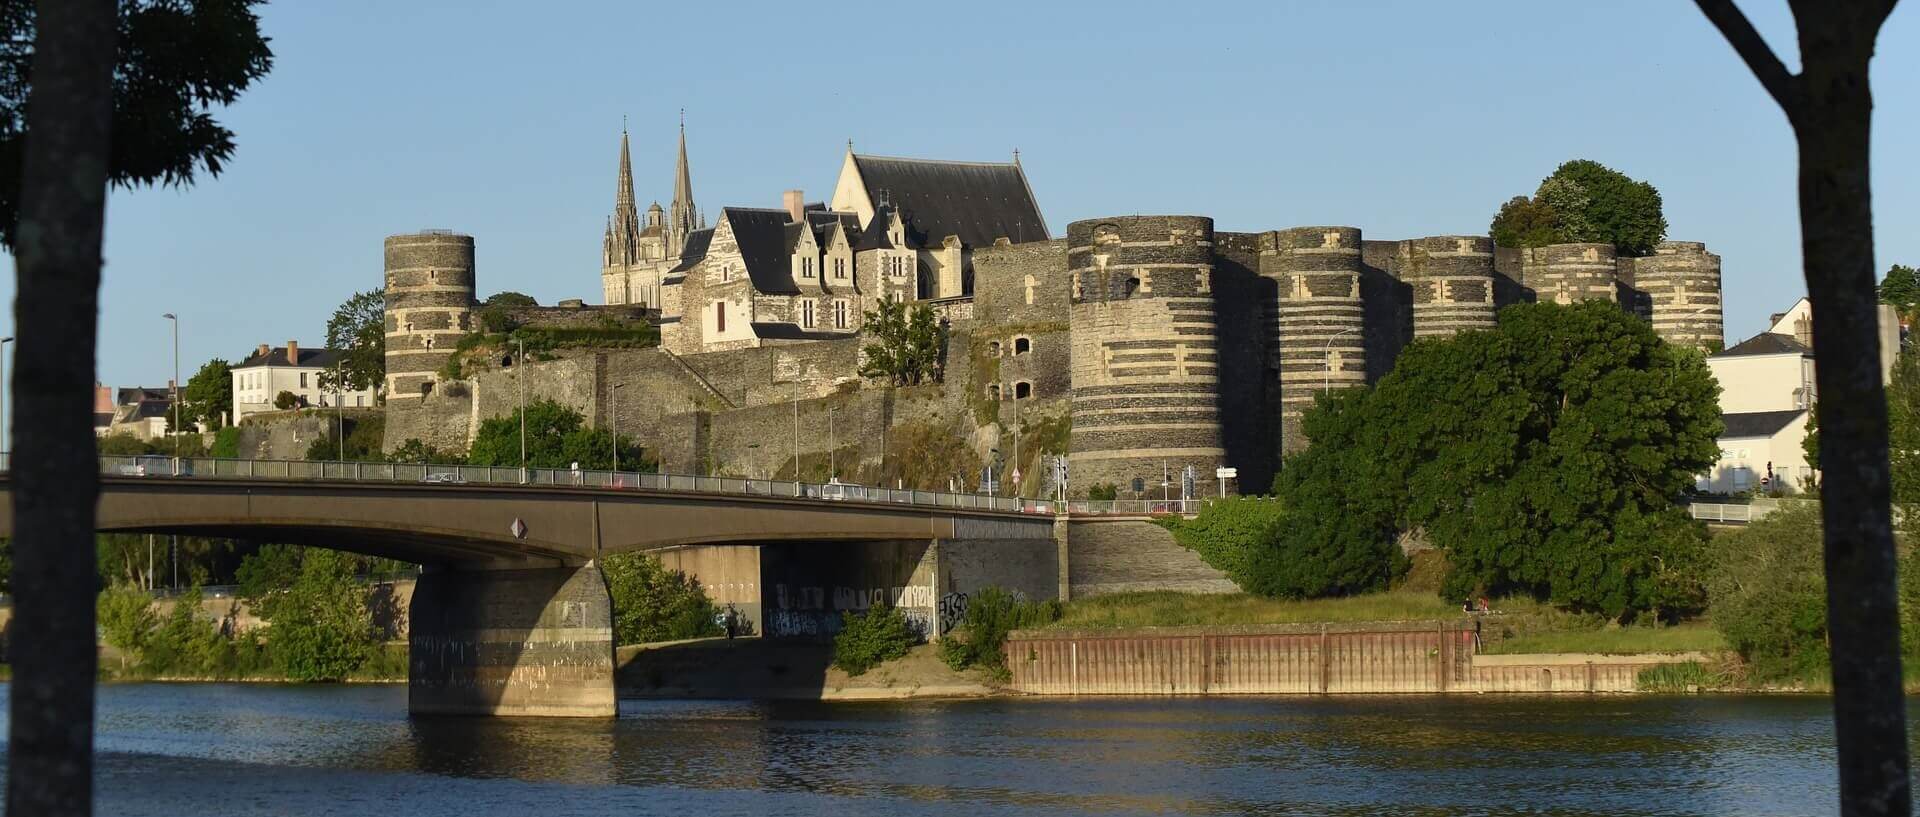 Vue éloignée de la ville d'Angers et son château